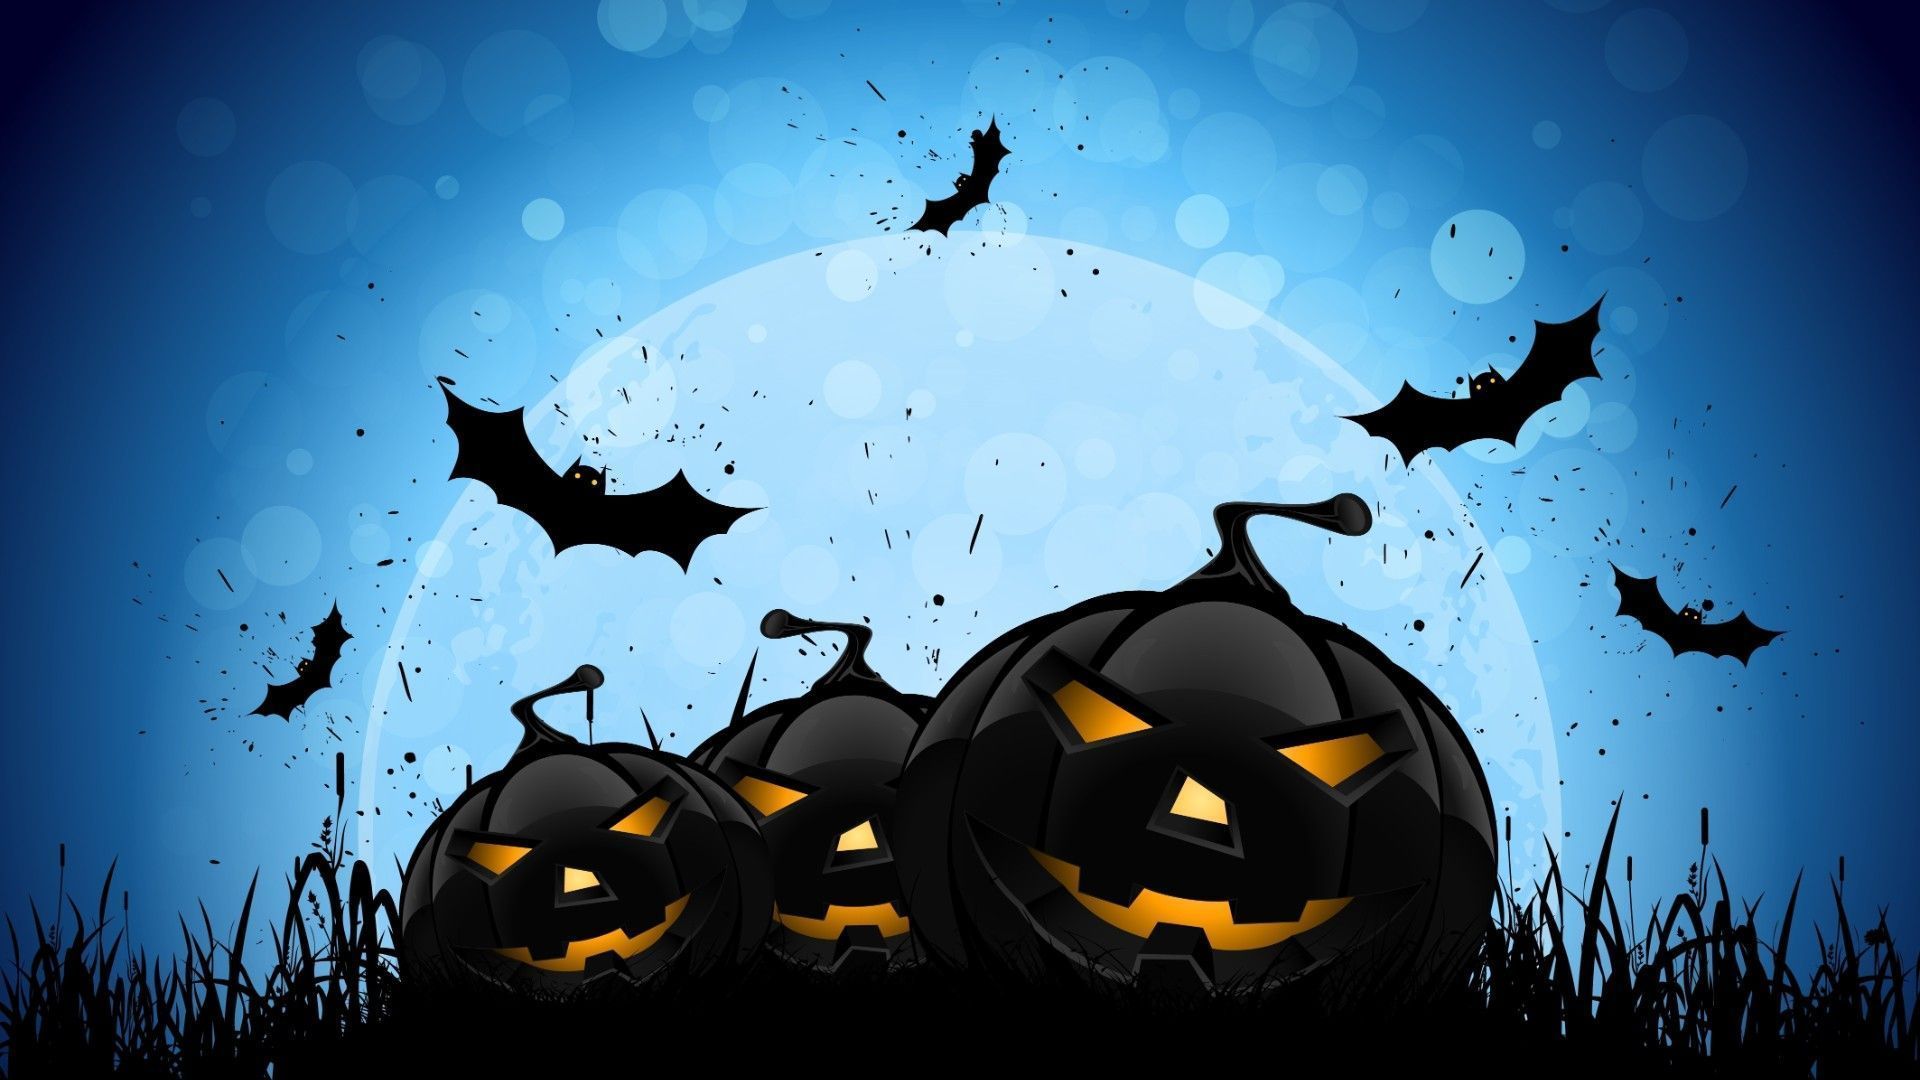 Halloween pumpkins on a blue background - Halloween desktop, spooky